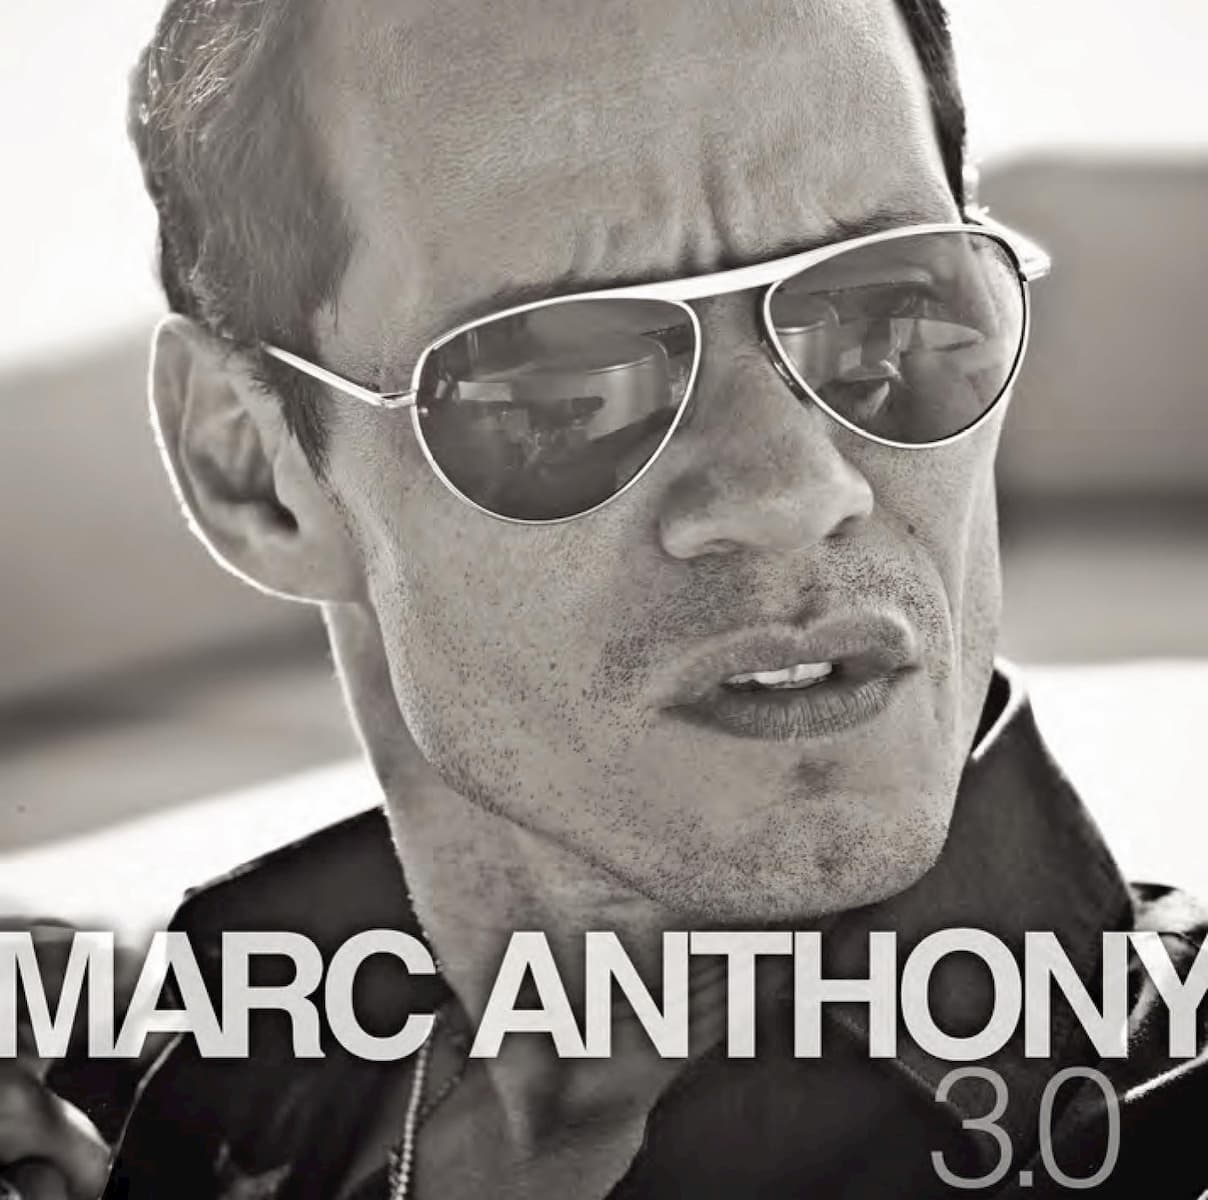 Erste Salsa-CD mit Diamant-Auszeichnung - Marc Anthony 3.0 erfolgreichstes Salsa-Album der Geschichte